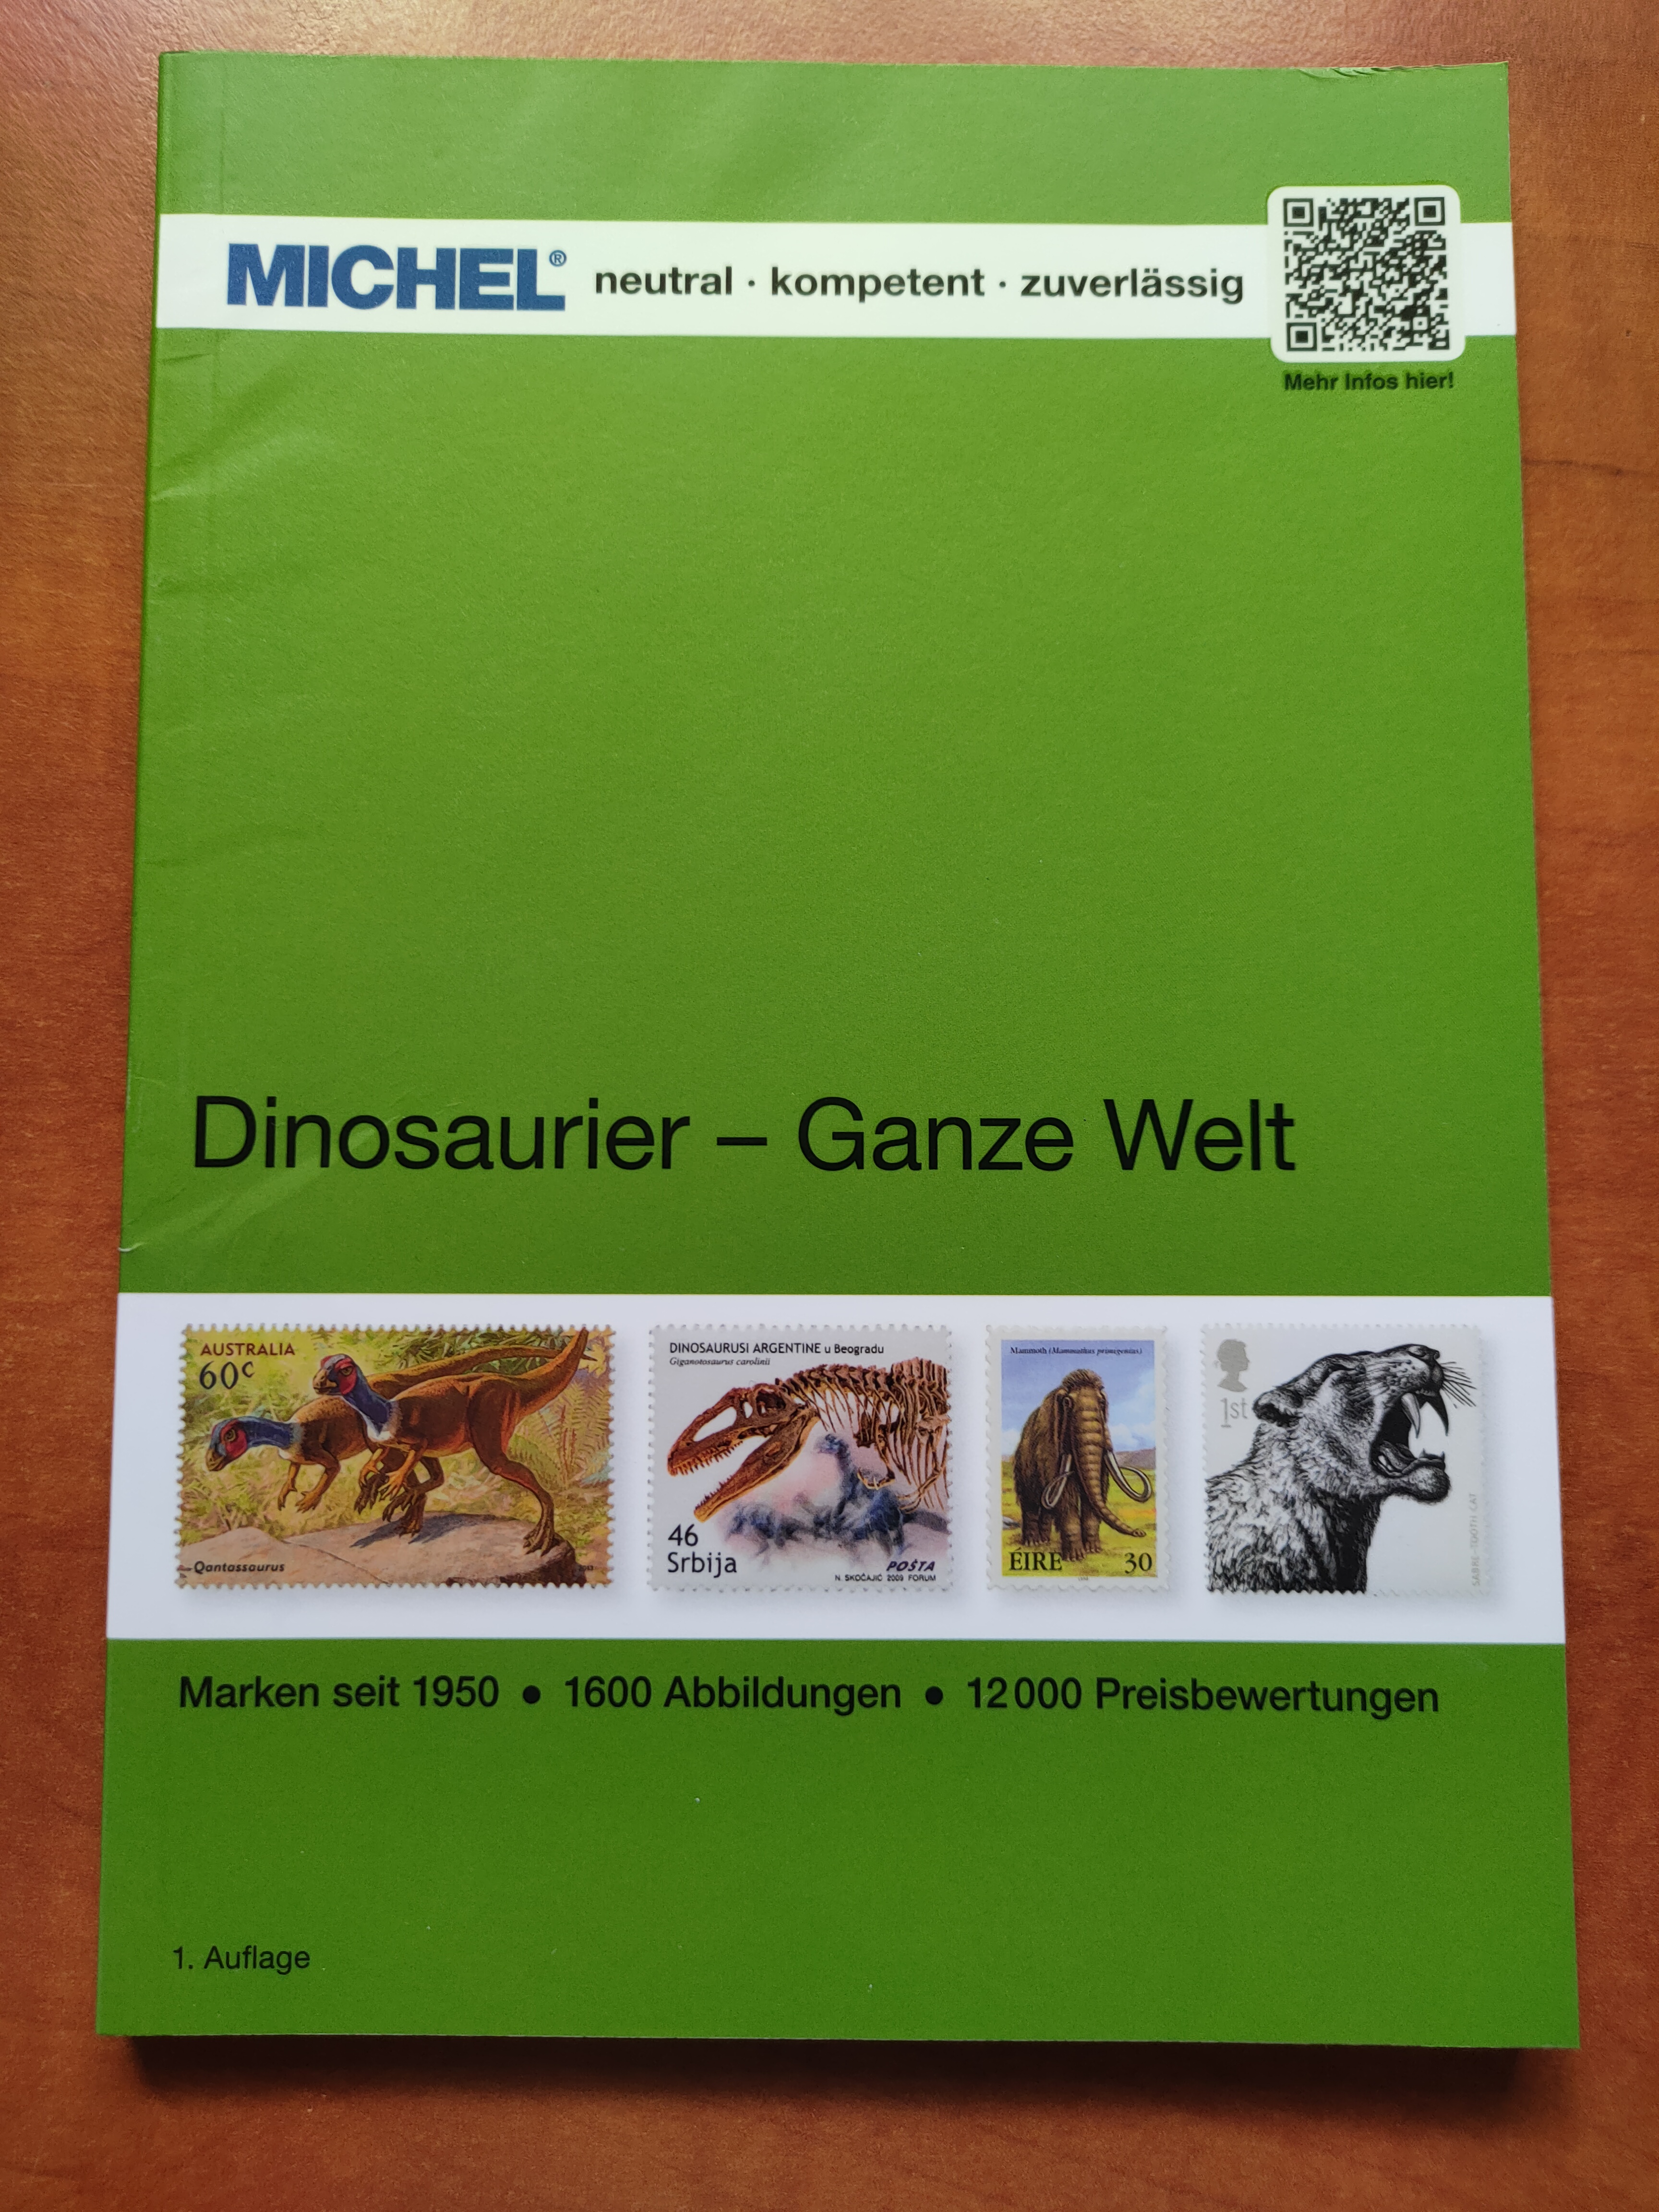 Dinosauři / Dinosaurier – celý svět MICHEL katalog známek